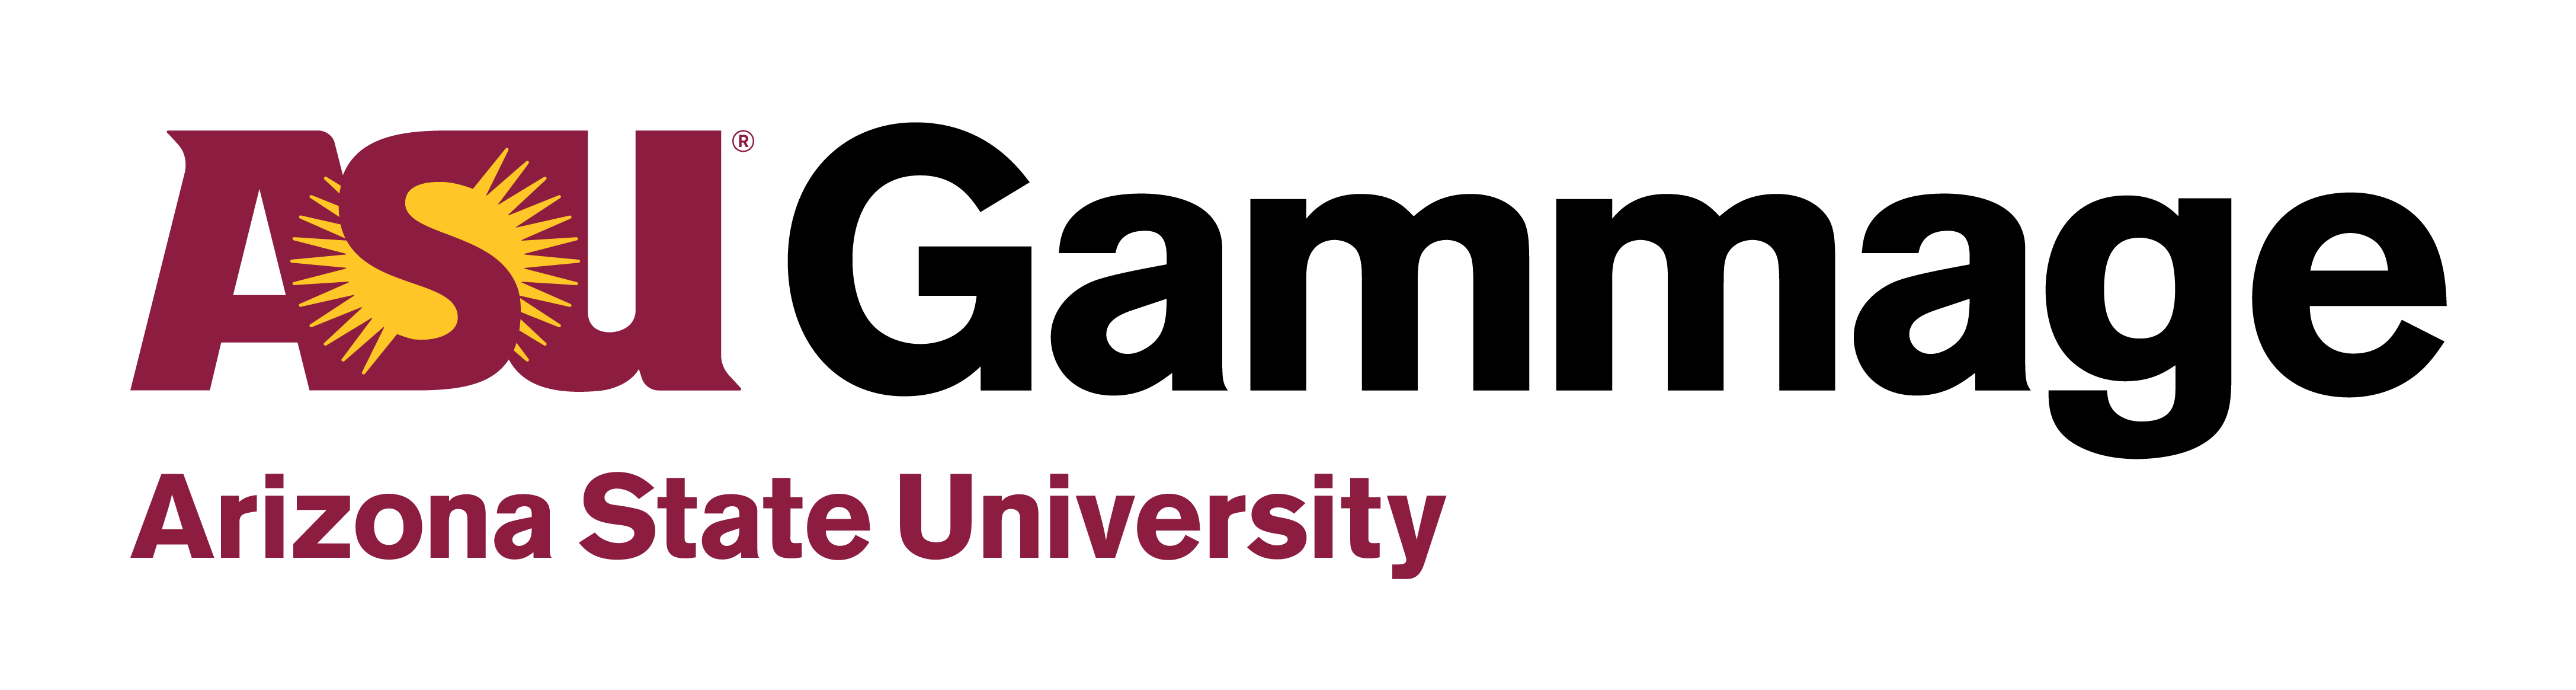 ASU Gammage Logo Color